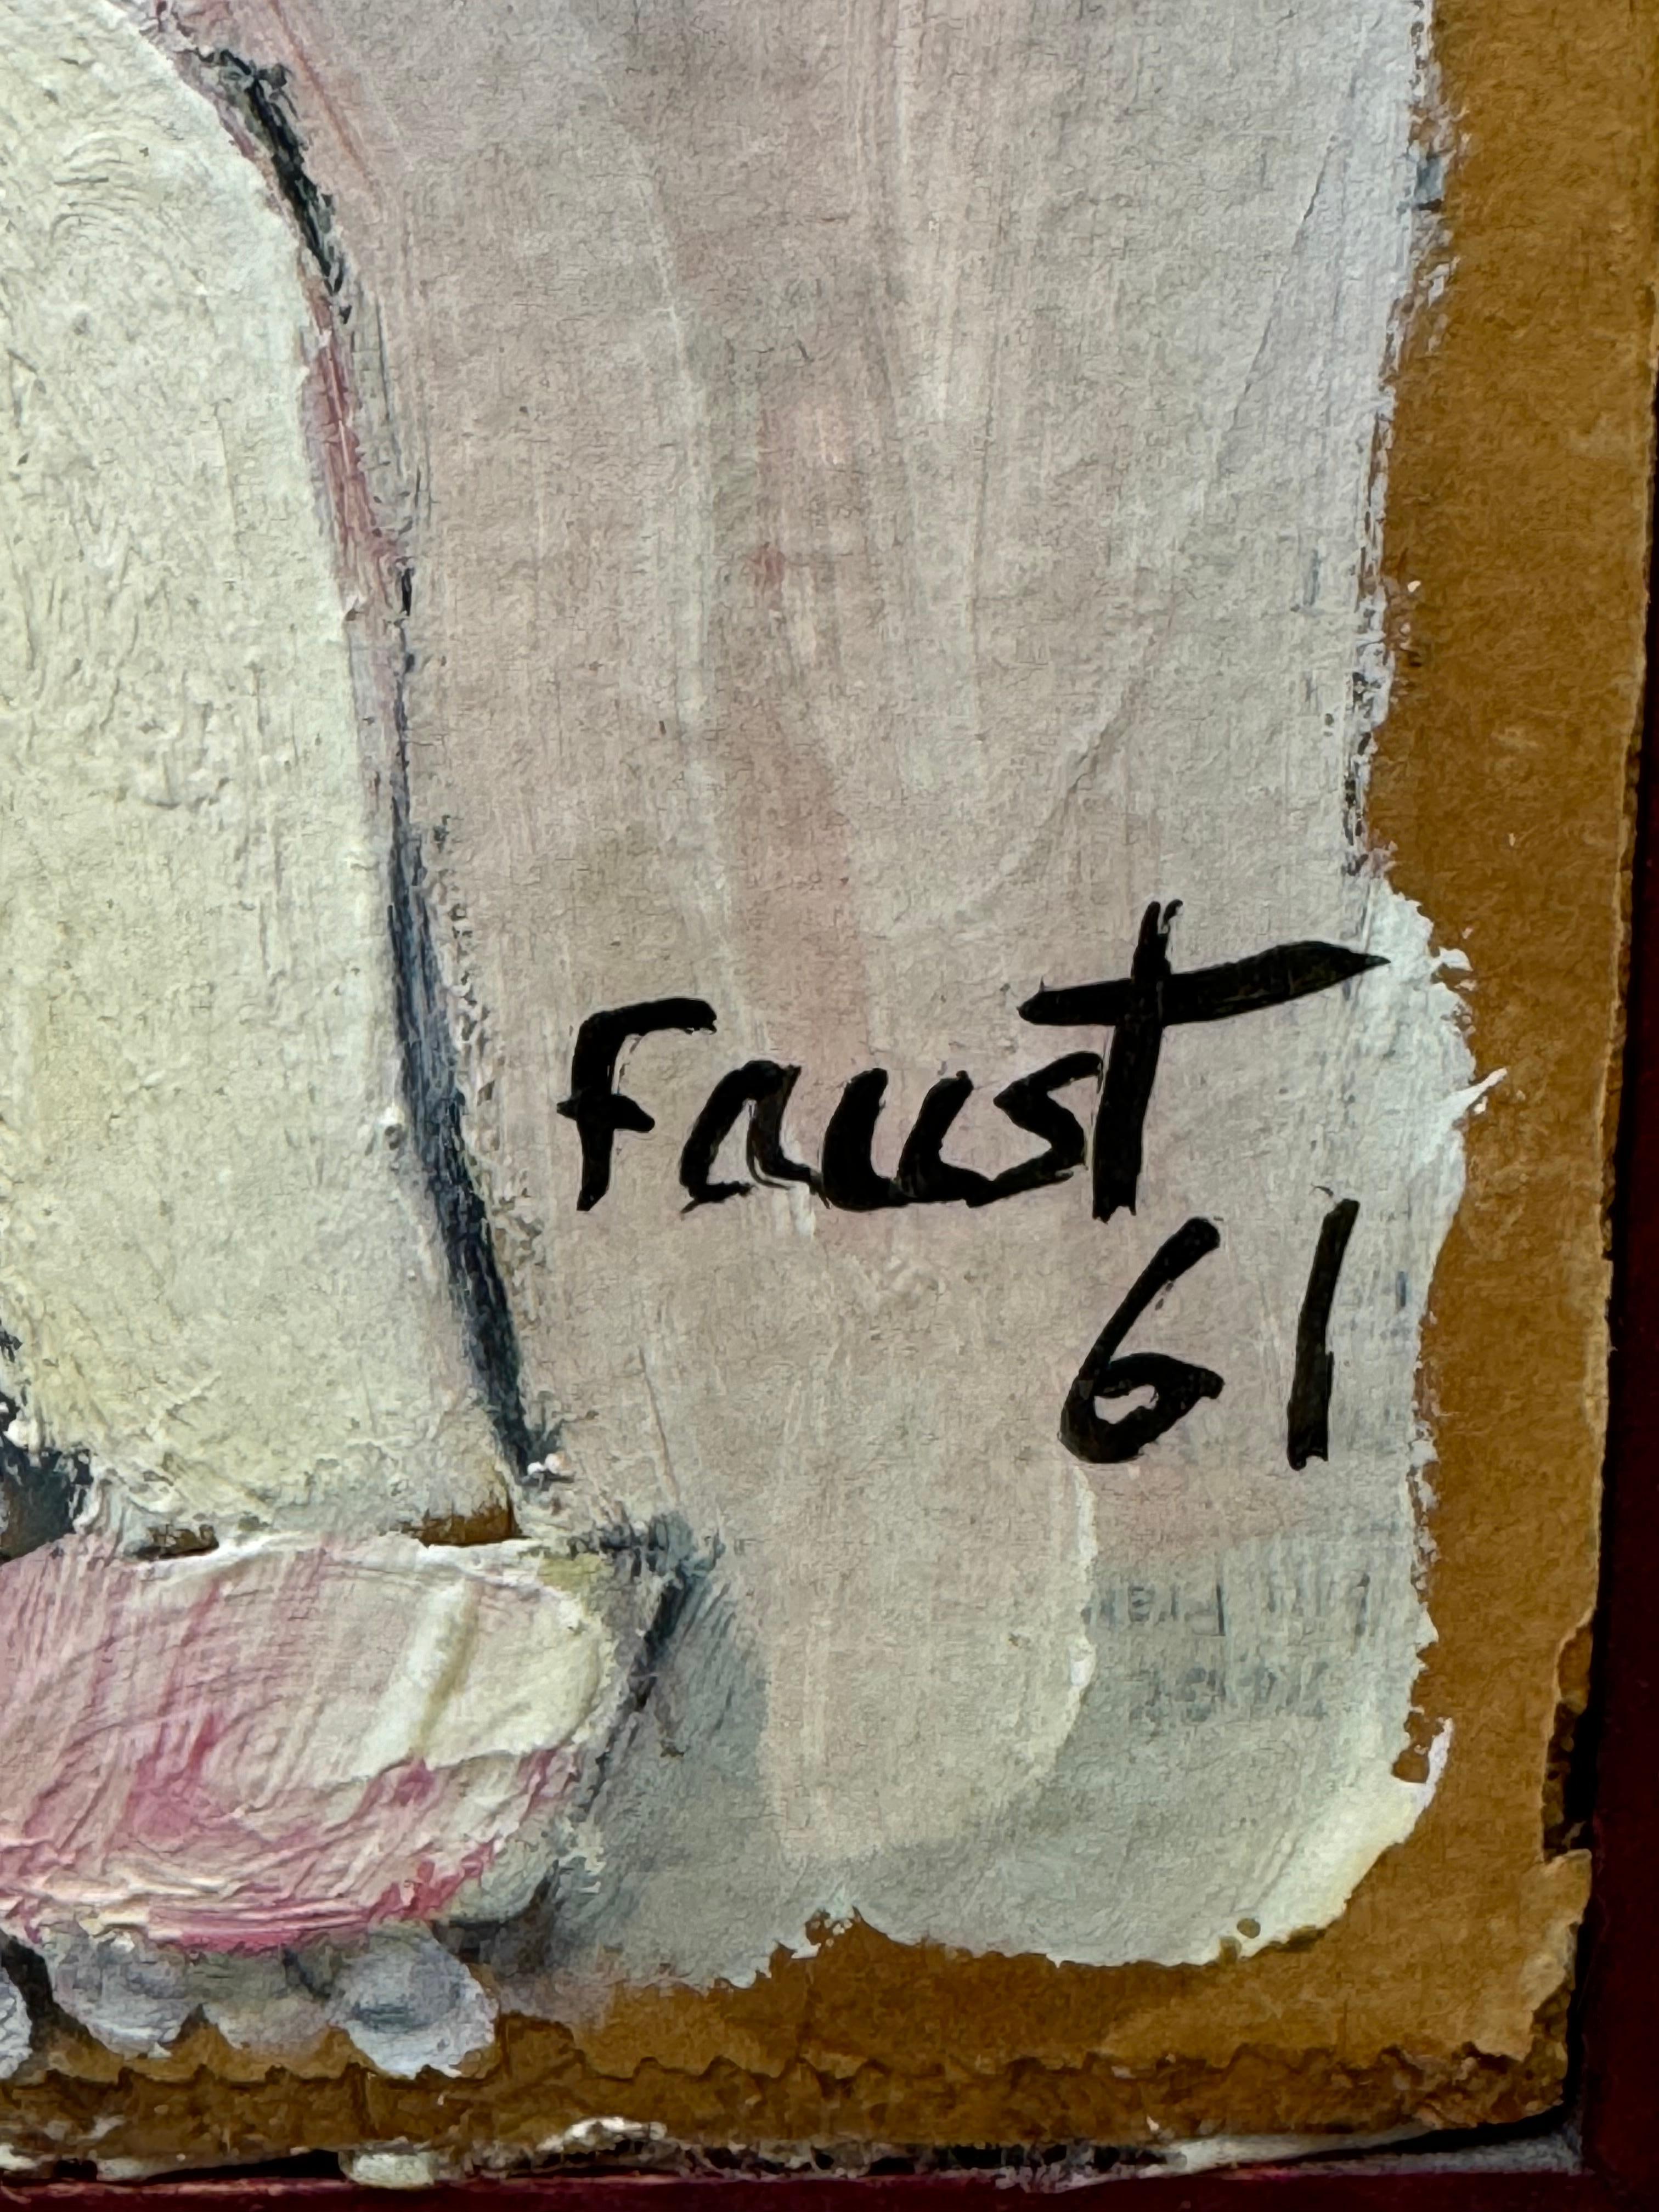 Franklin Faust
Gemischte Medien auf Karton
1961
Fünf Figuren und ein Pferd
23 x 27,5 ungerahmt
27,75 x 33,75 gerahmt
